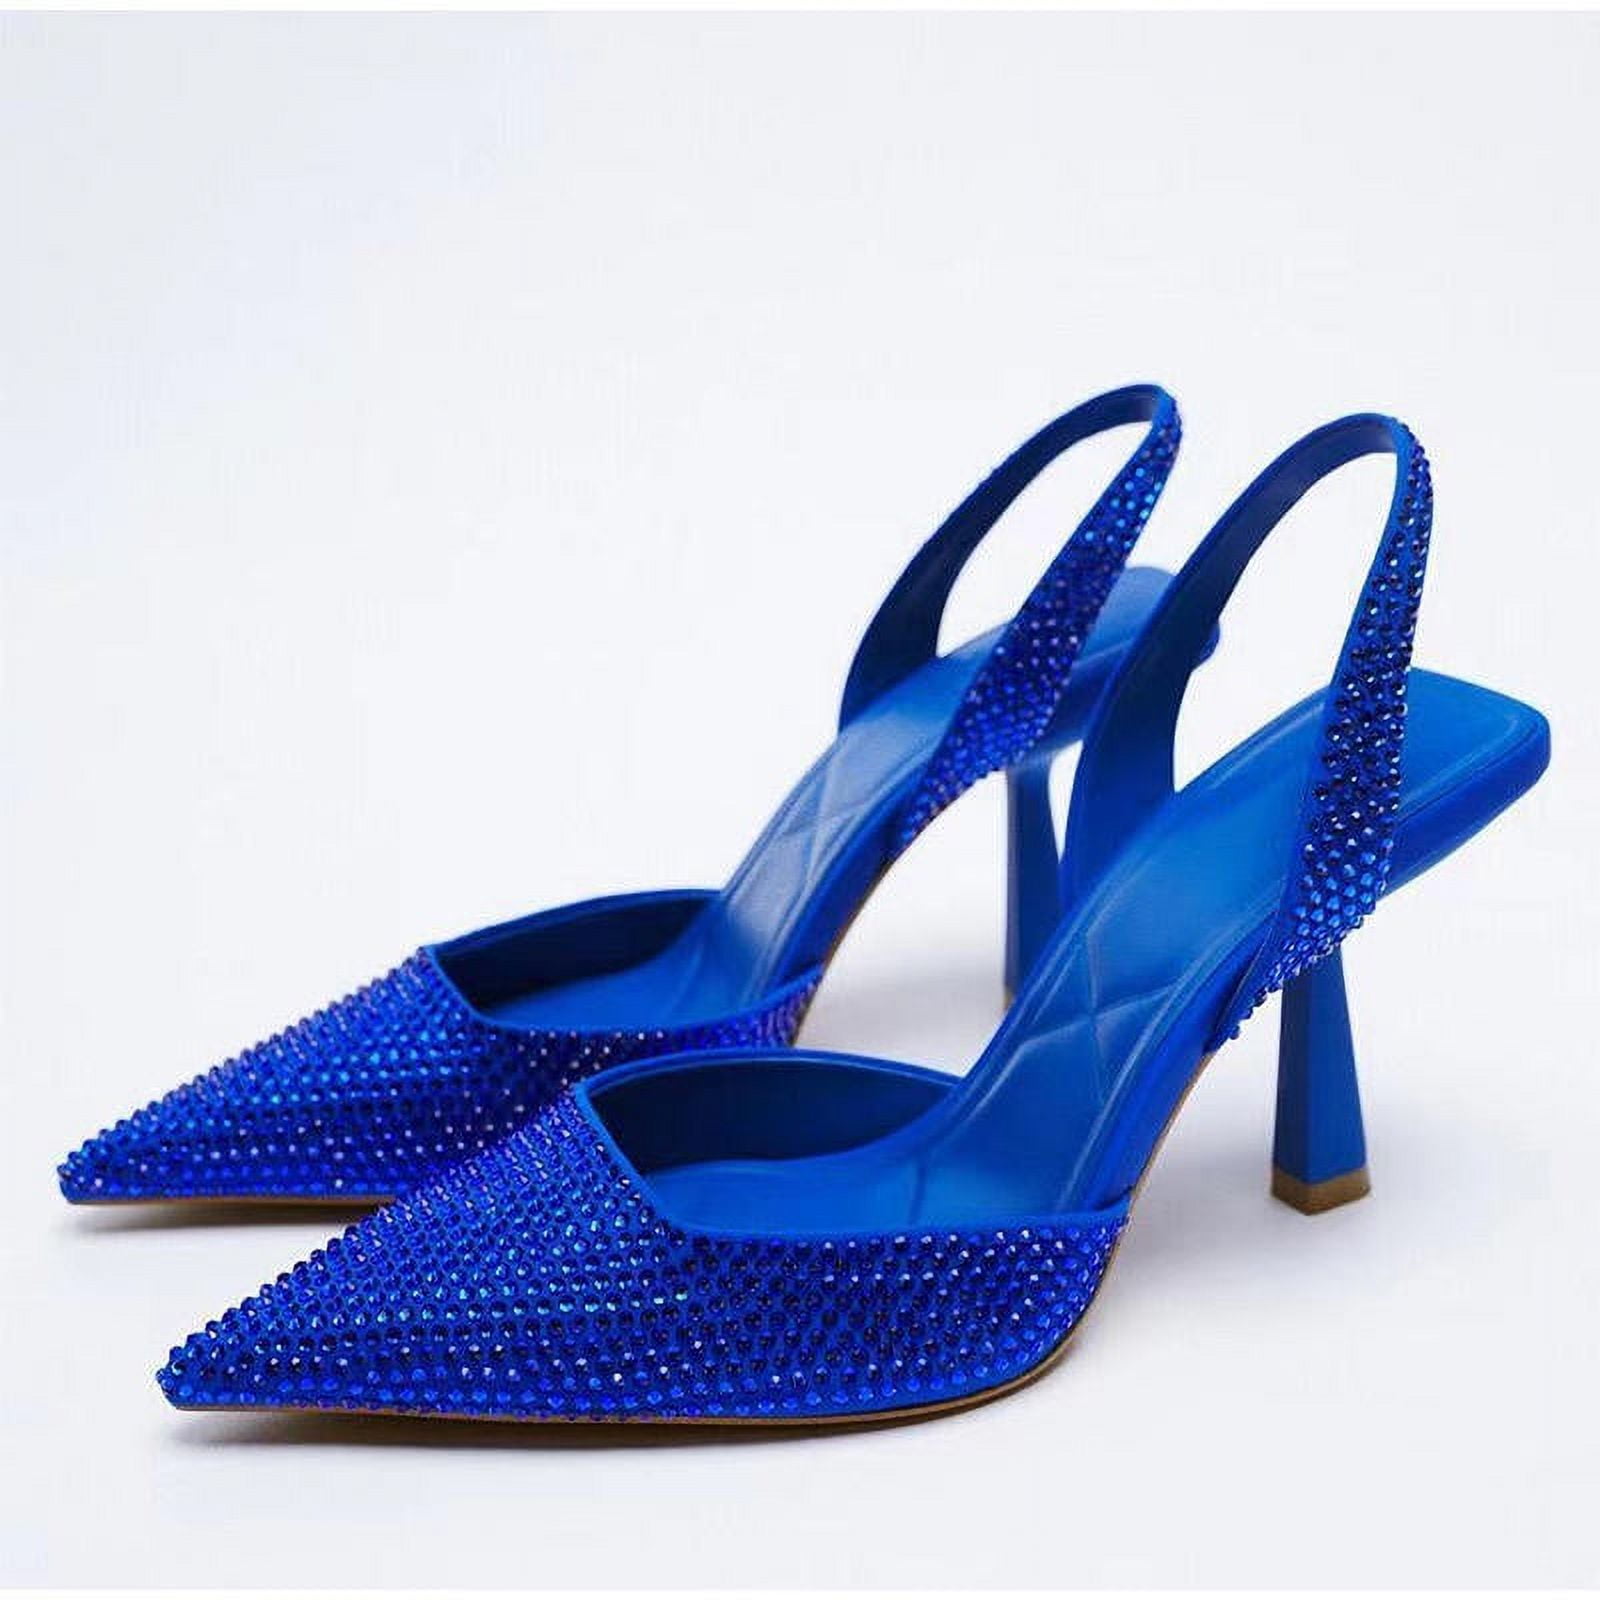 Buy Now Women Blue Embellished Open Toe Block Heels – Inc5 Shoes